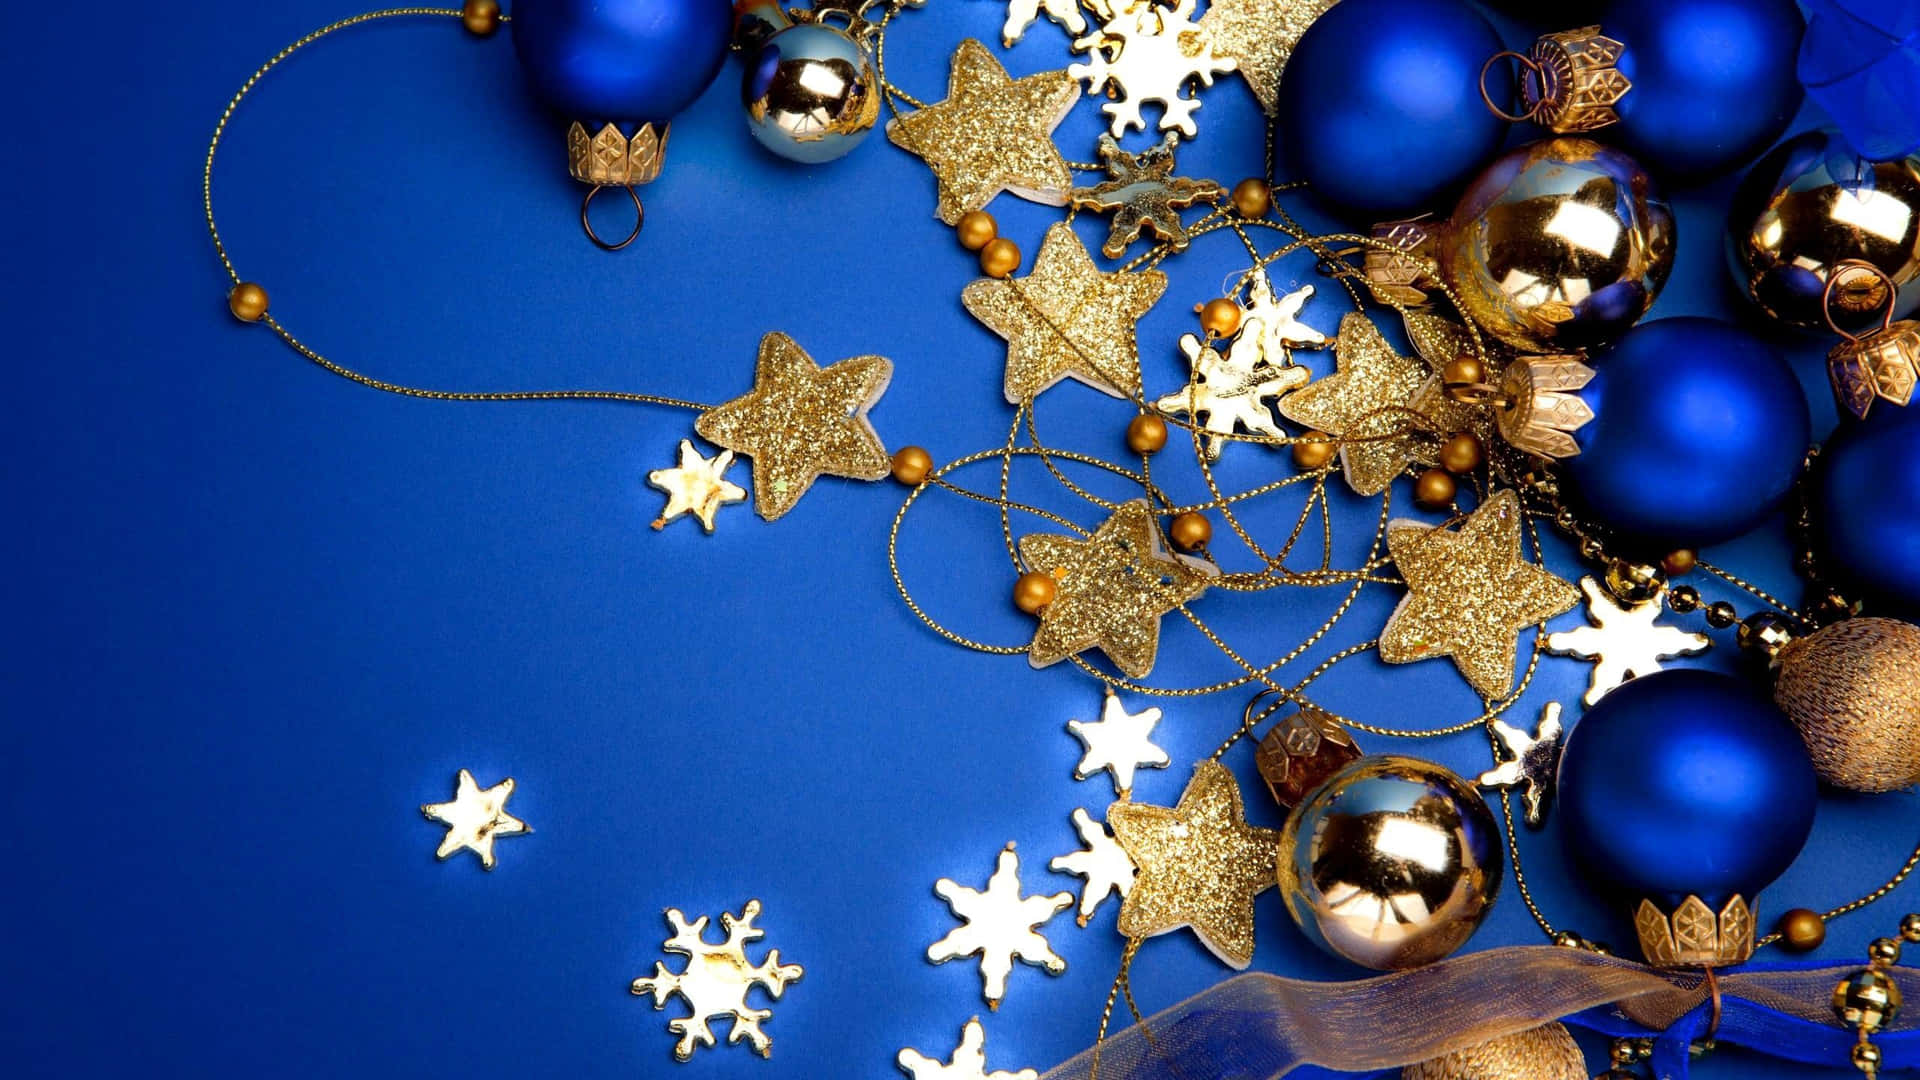 Weihnachtsbildermit Glitzernden Ornamenten